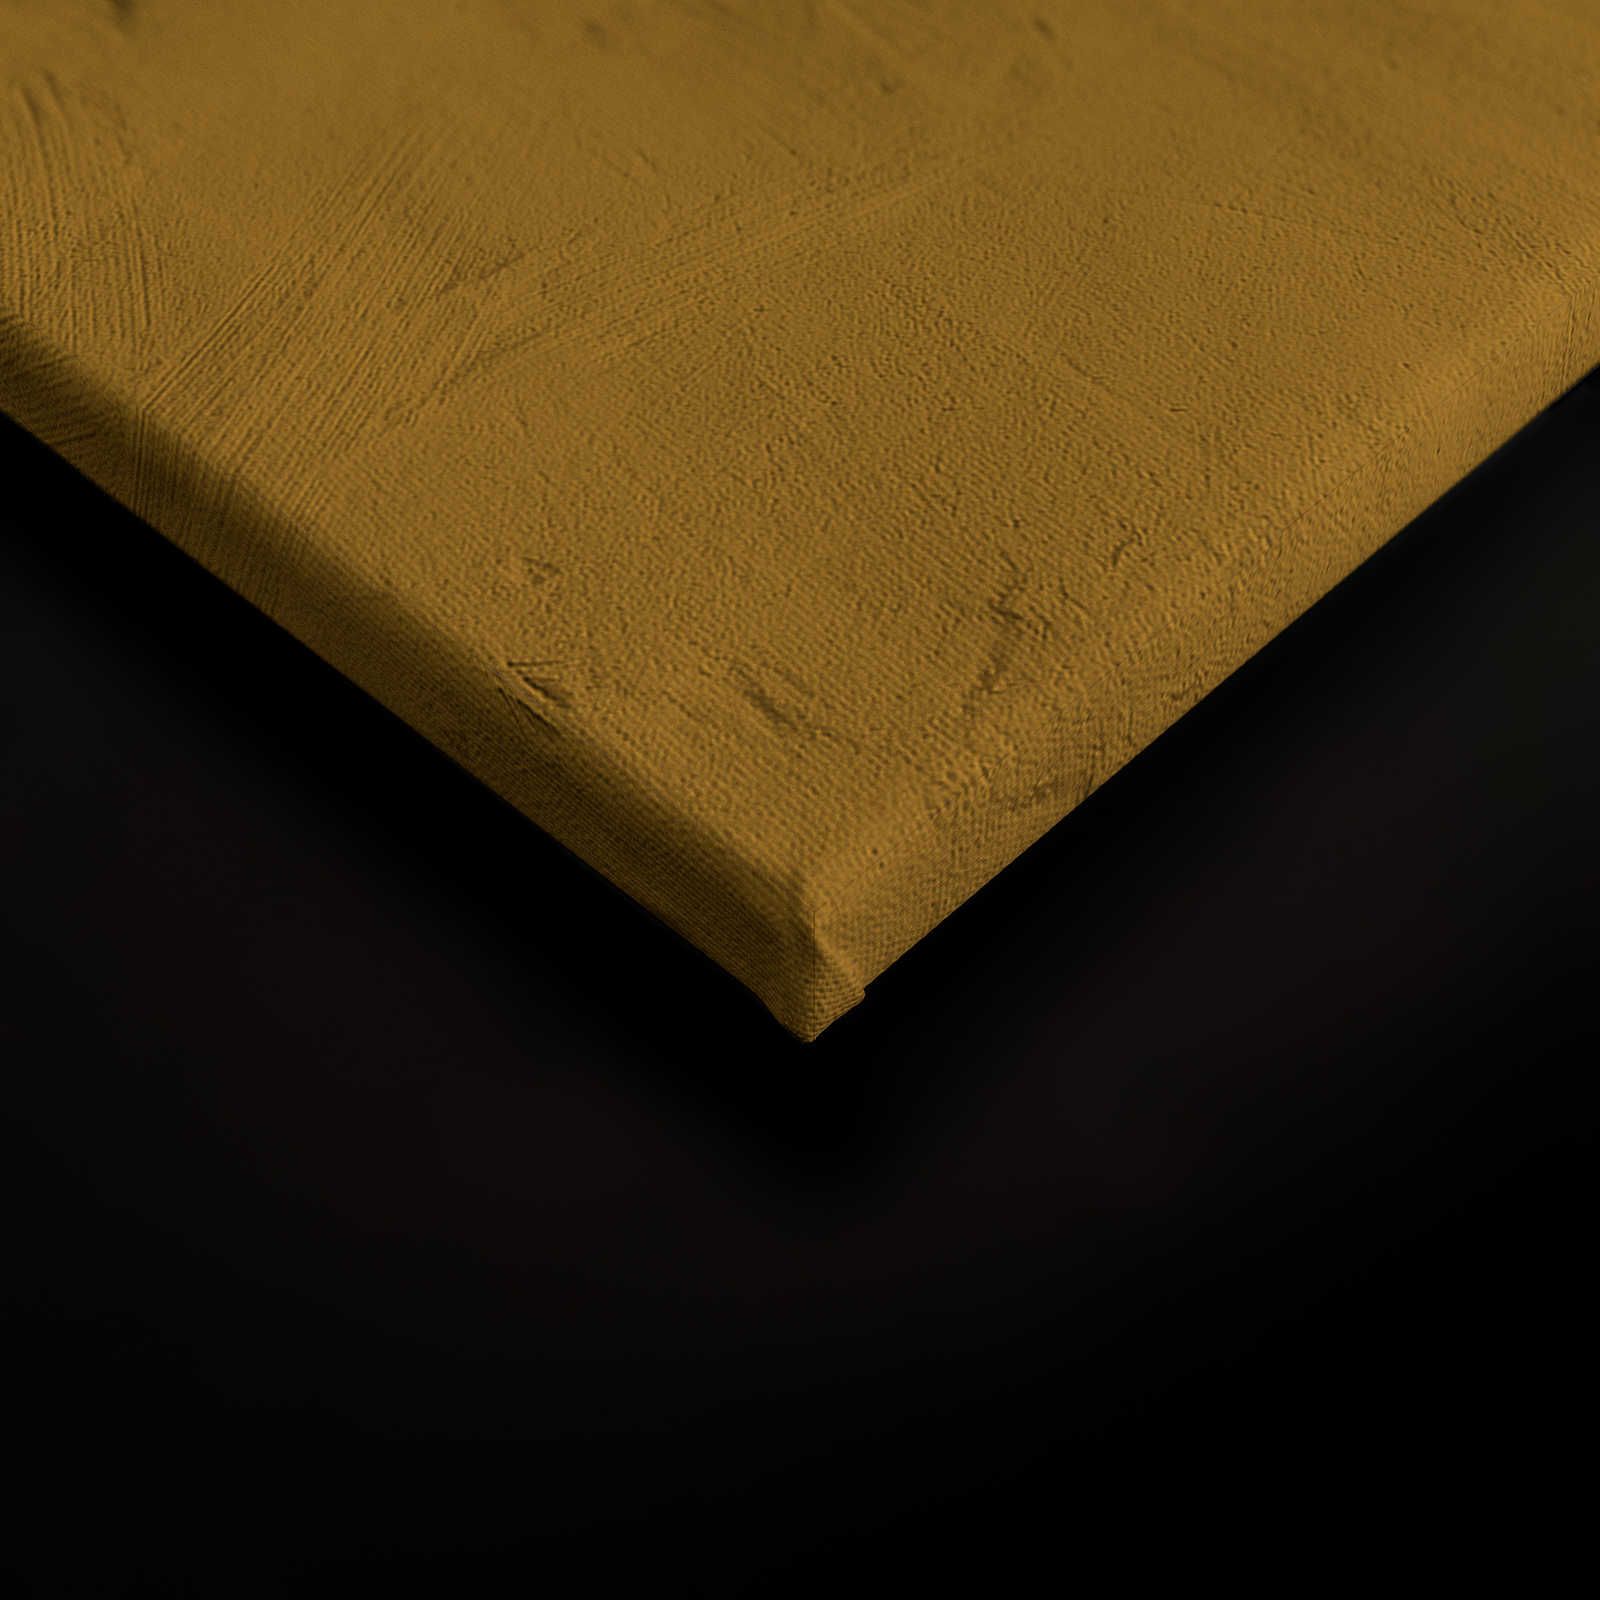             Zulu 1 - Quadro su tela giallo senape, Africa Masks Zulu Design - 0,90 m x 0,60 m
        